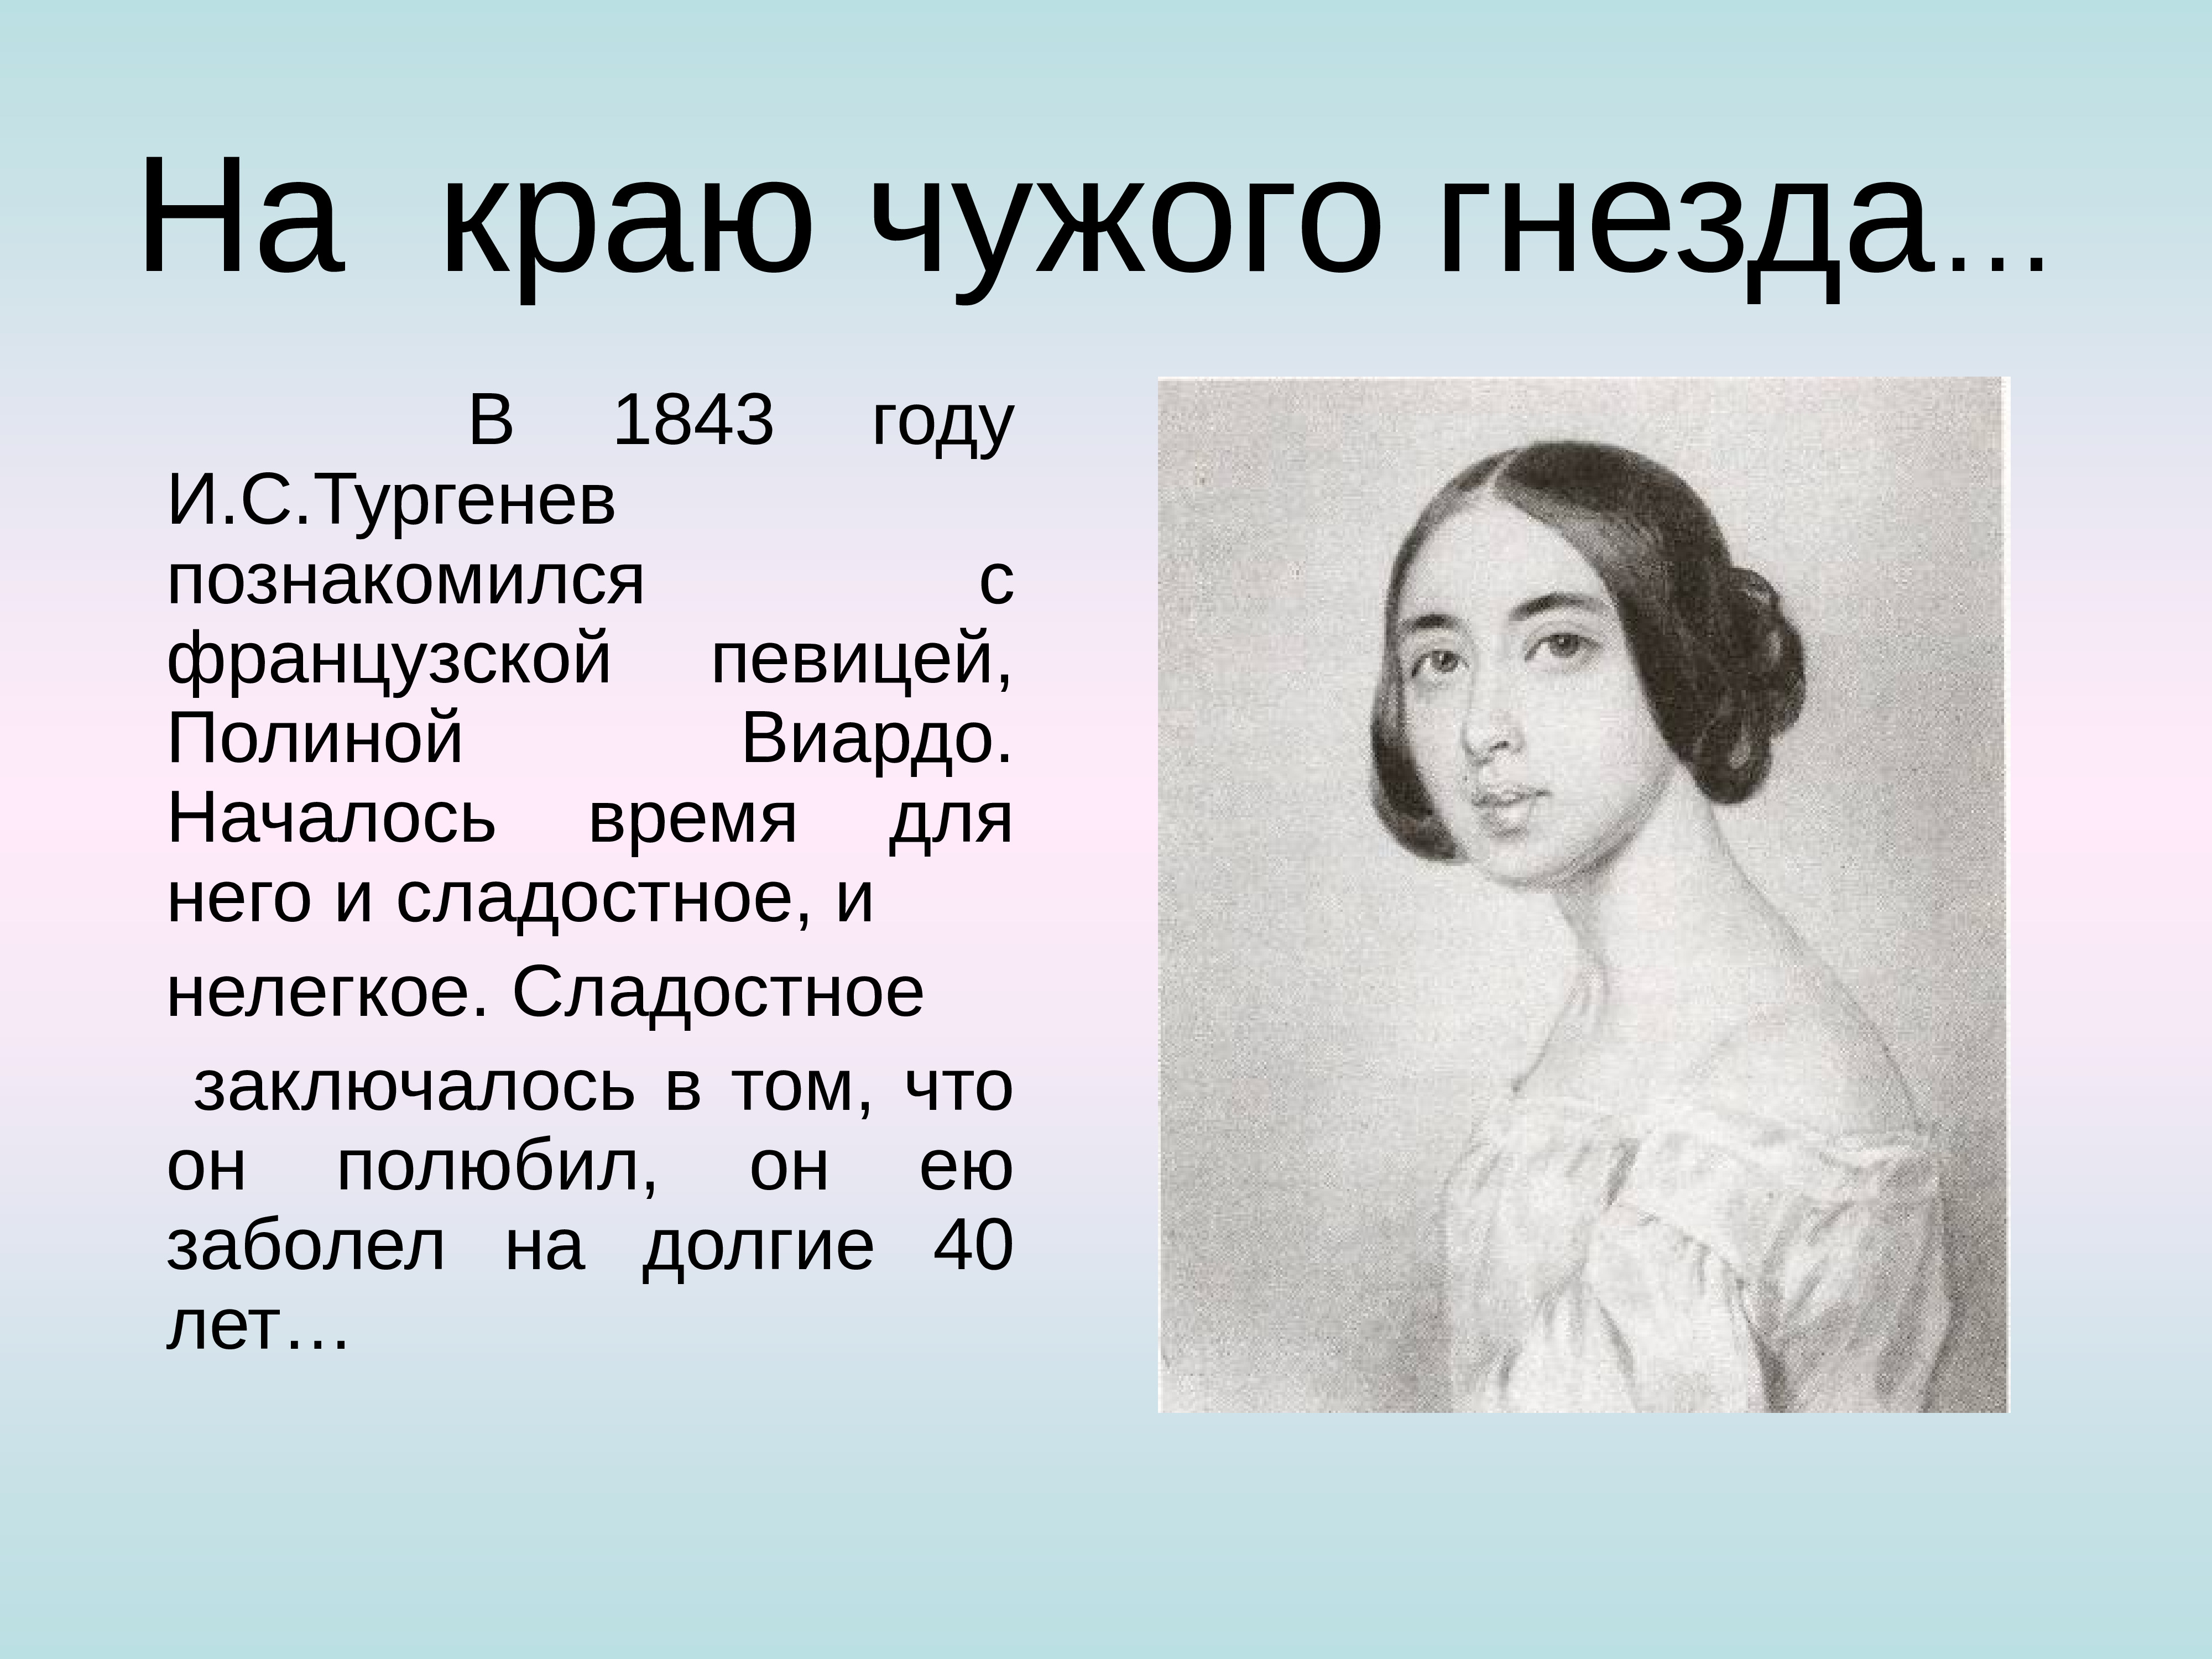 В 1843 году Тургенев знакомится с Полиной Виардо